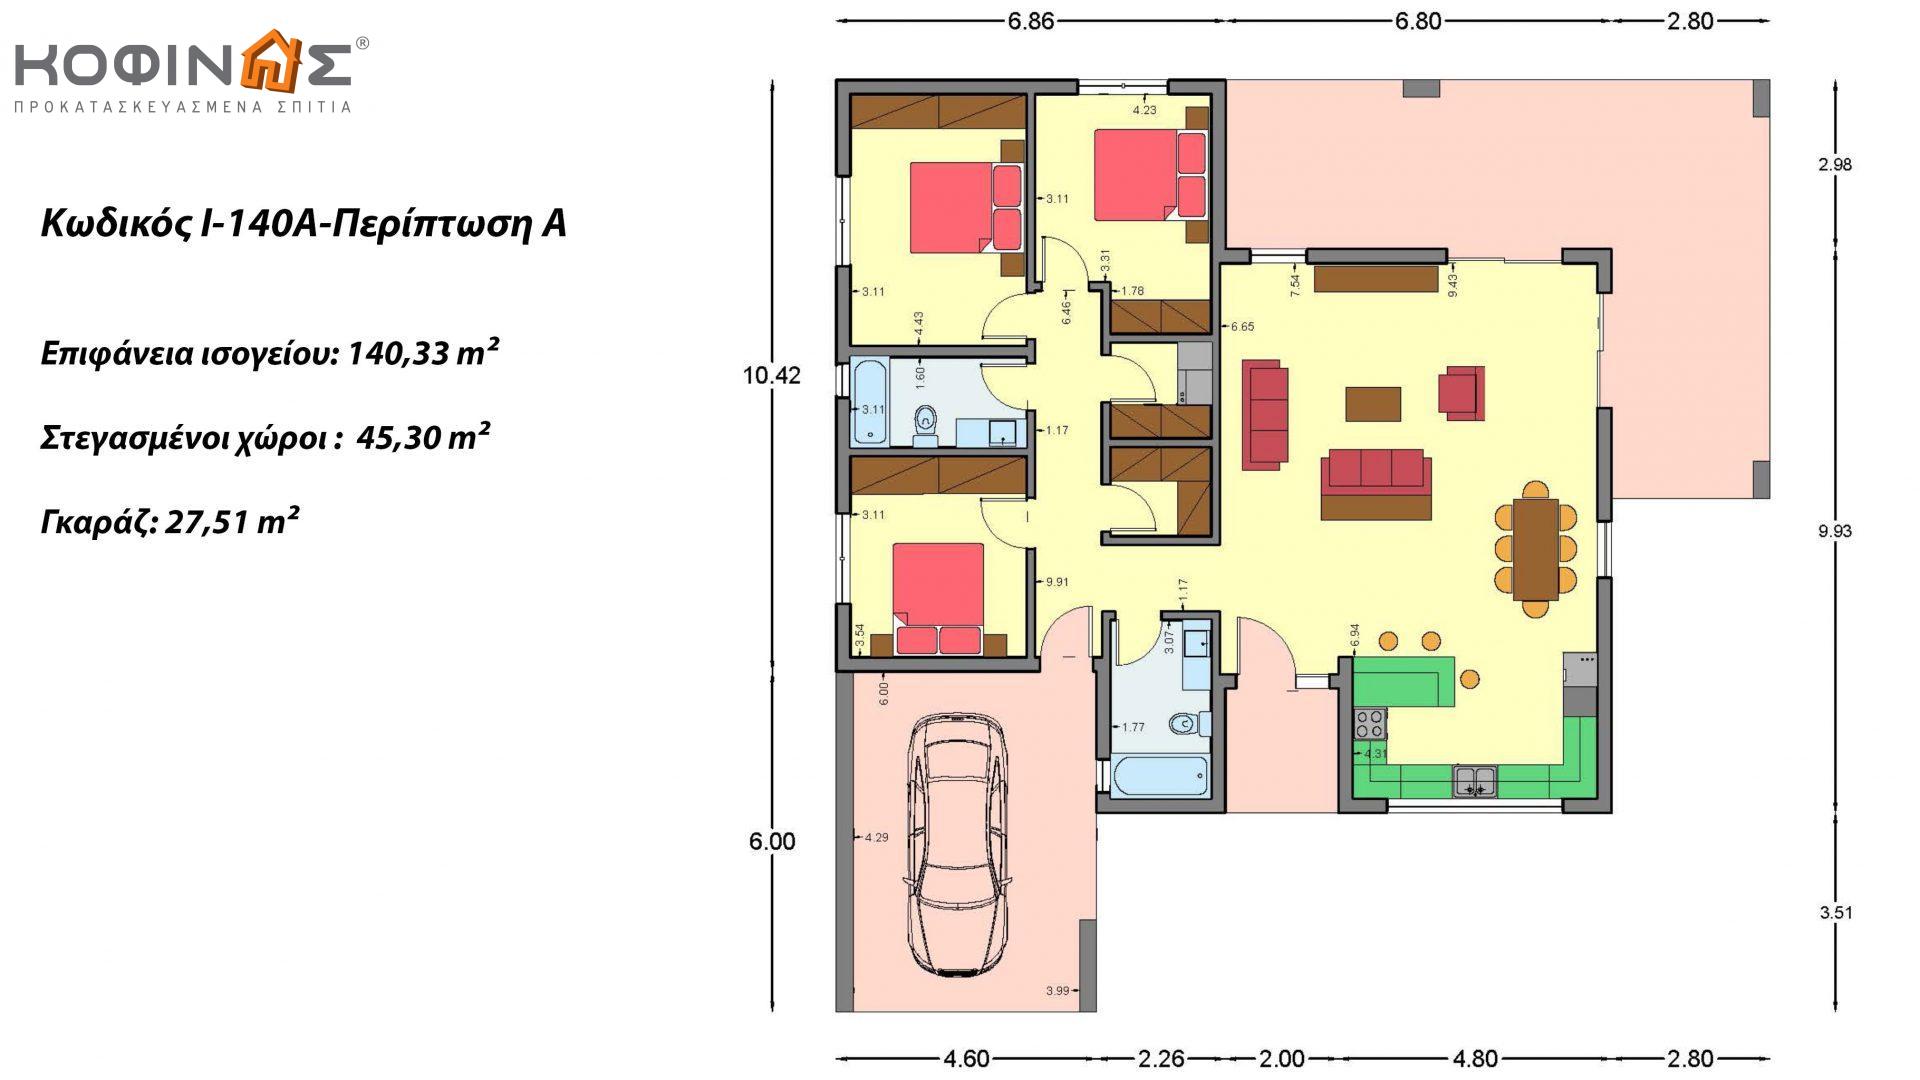 Ισόγεια Κατοικία I-140Α, συνολικής επιφάνειας 140,33 τ.μ., +Γκαράζ 27,51 m² (=167,84 m²), στεγασμένοι χώροι 45,30 τ.μ. και 44,71 τ.μ. για περίπτωση Β